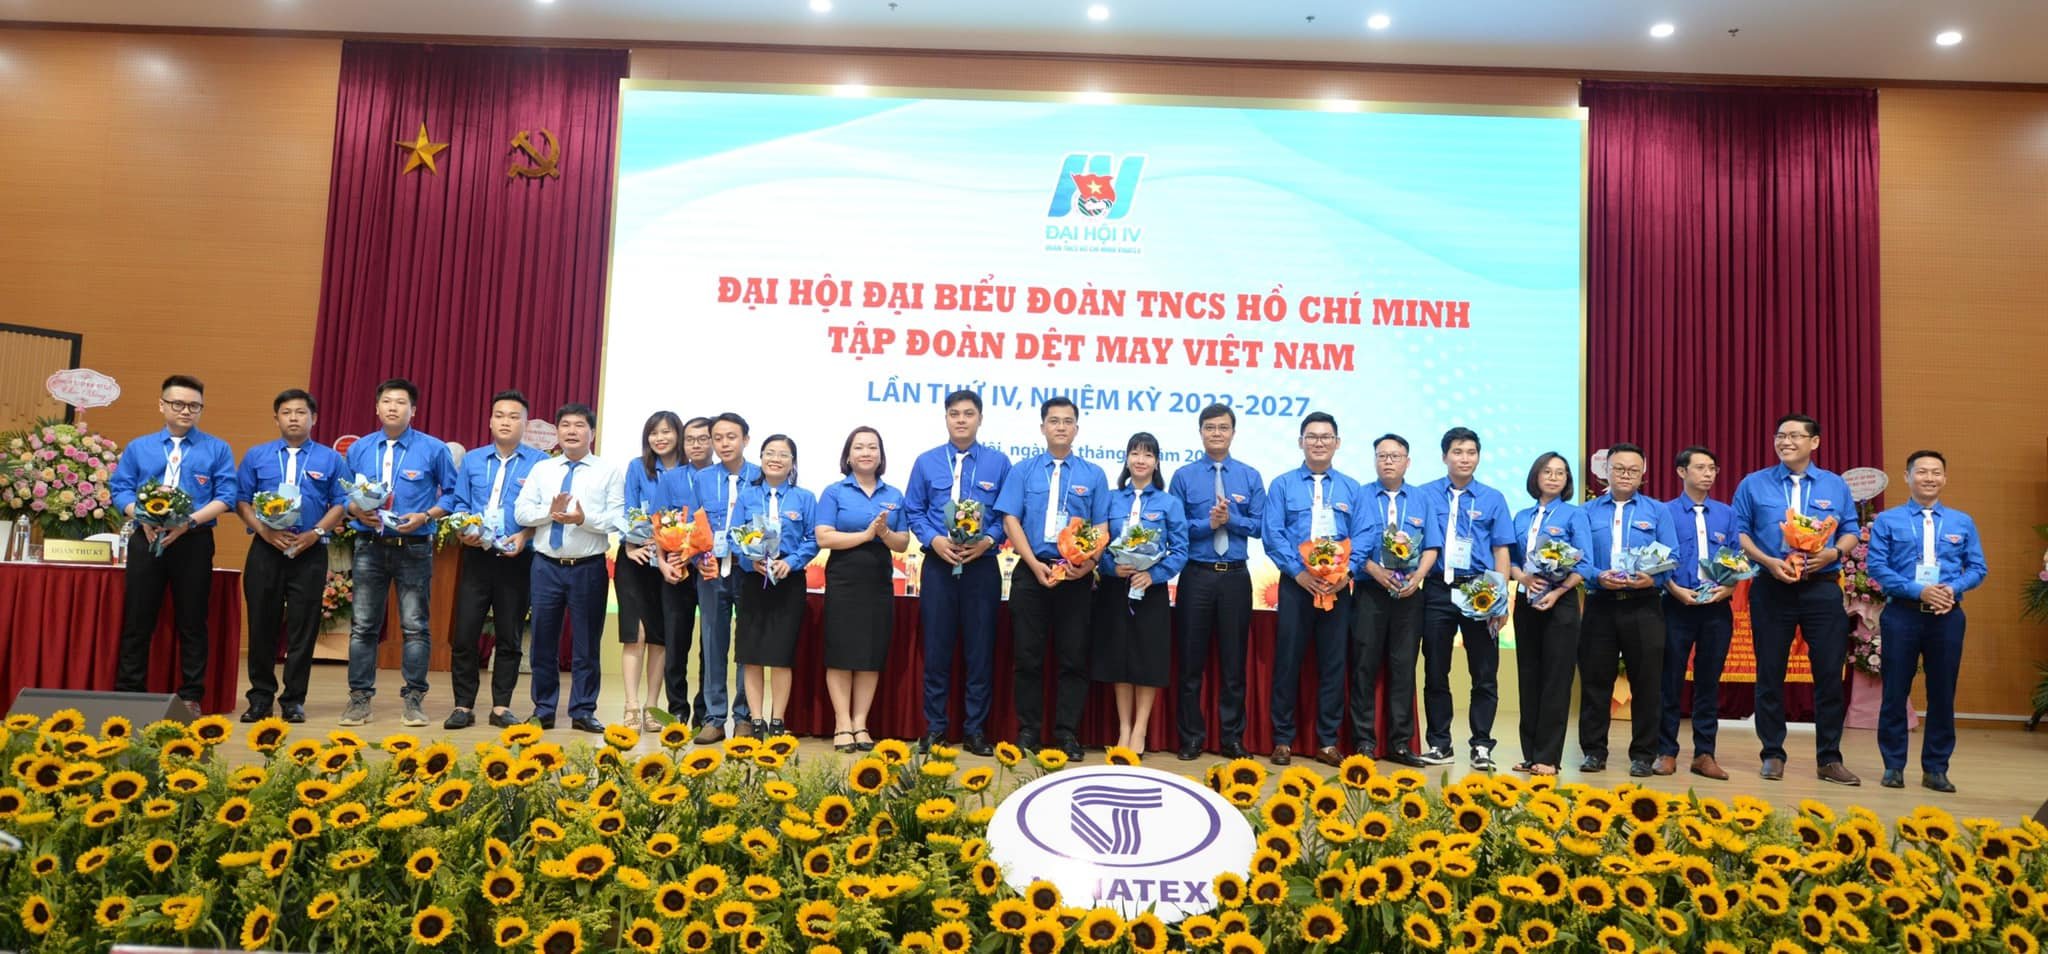 Ra mắt Ban chấp hành Đoàn Tập đoàn Dệt may Việt Nam